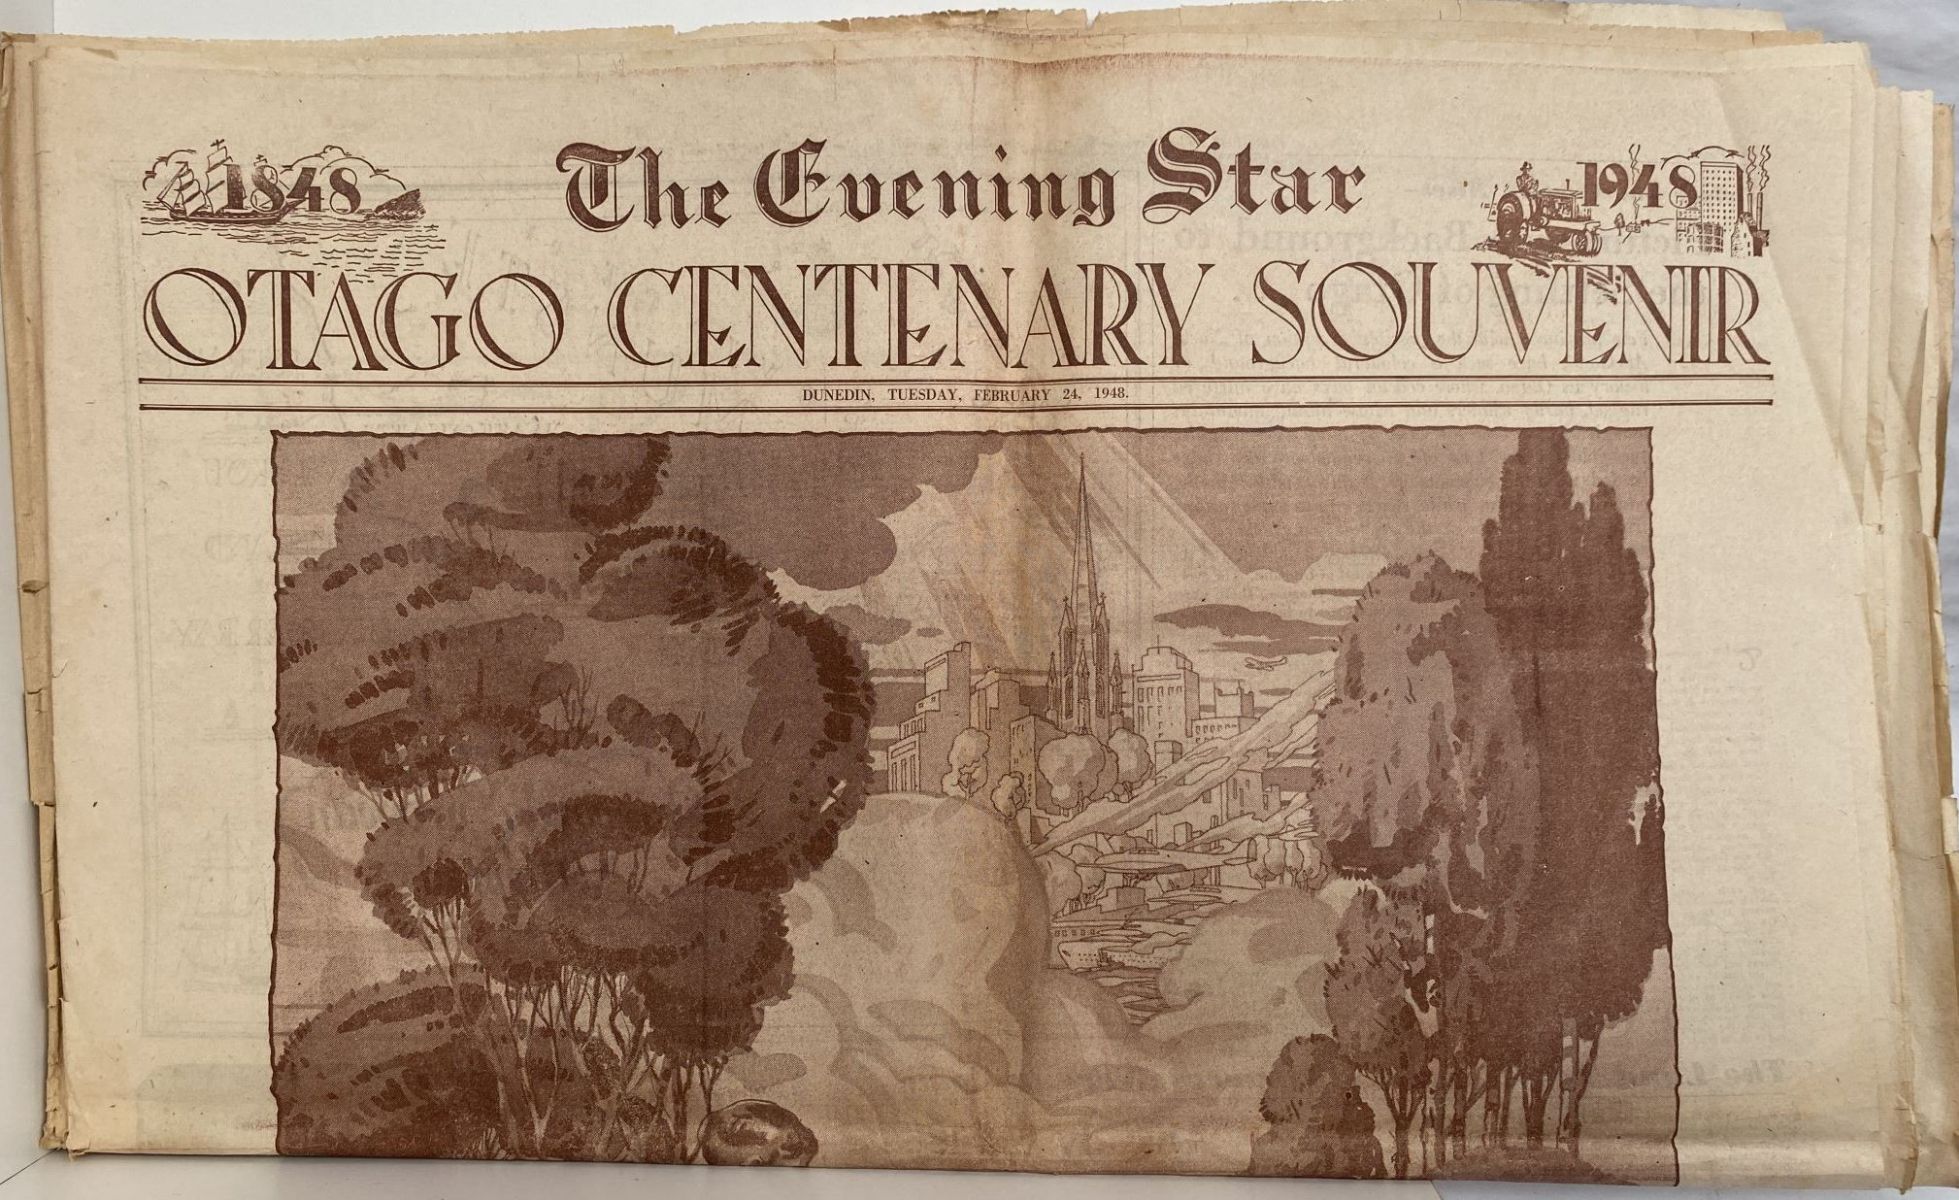 OLD NEWSPAPER: The Evening Star 1888 - 1948 Otago Centenary Souvenir